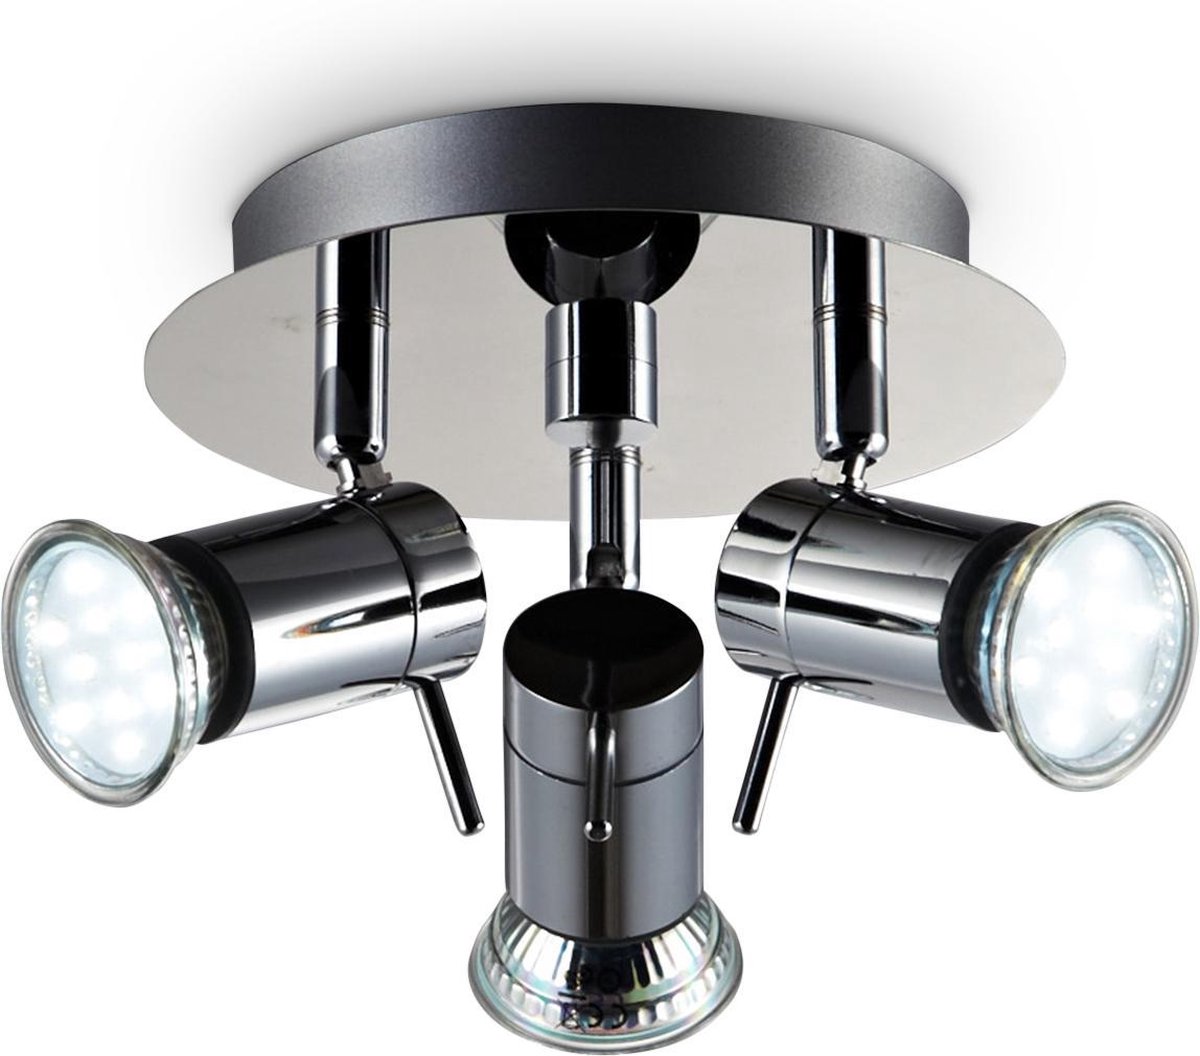 B.K.Licht - Plafondspots Badkamer - badkamerlamp - GU10 fitting - opbouwspots met 3 lichtpunten - draaibar - IP44 - incl. 3x GU10 - 3.000K - 250Lm - 4W